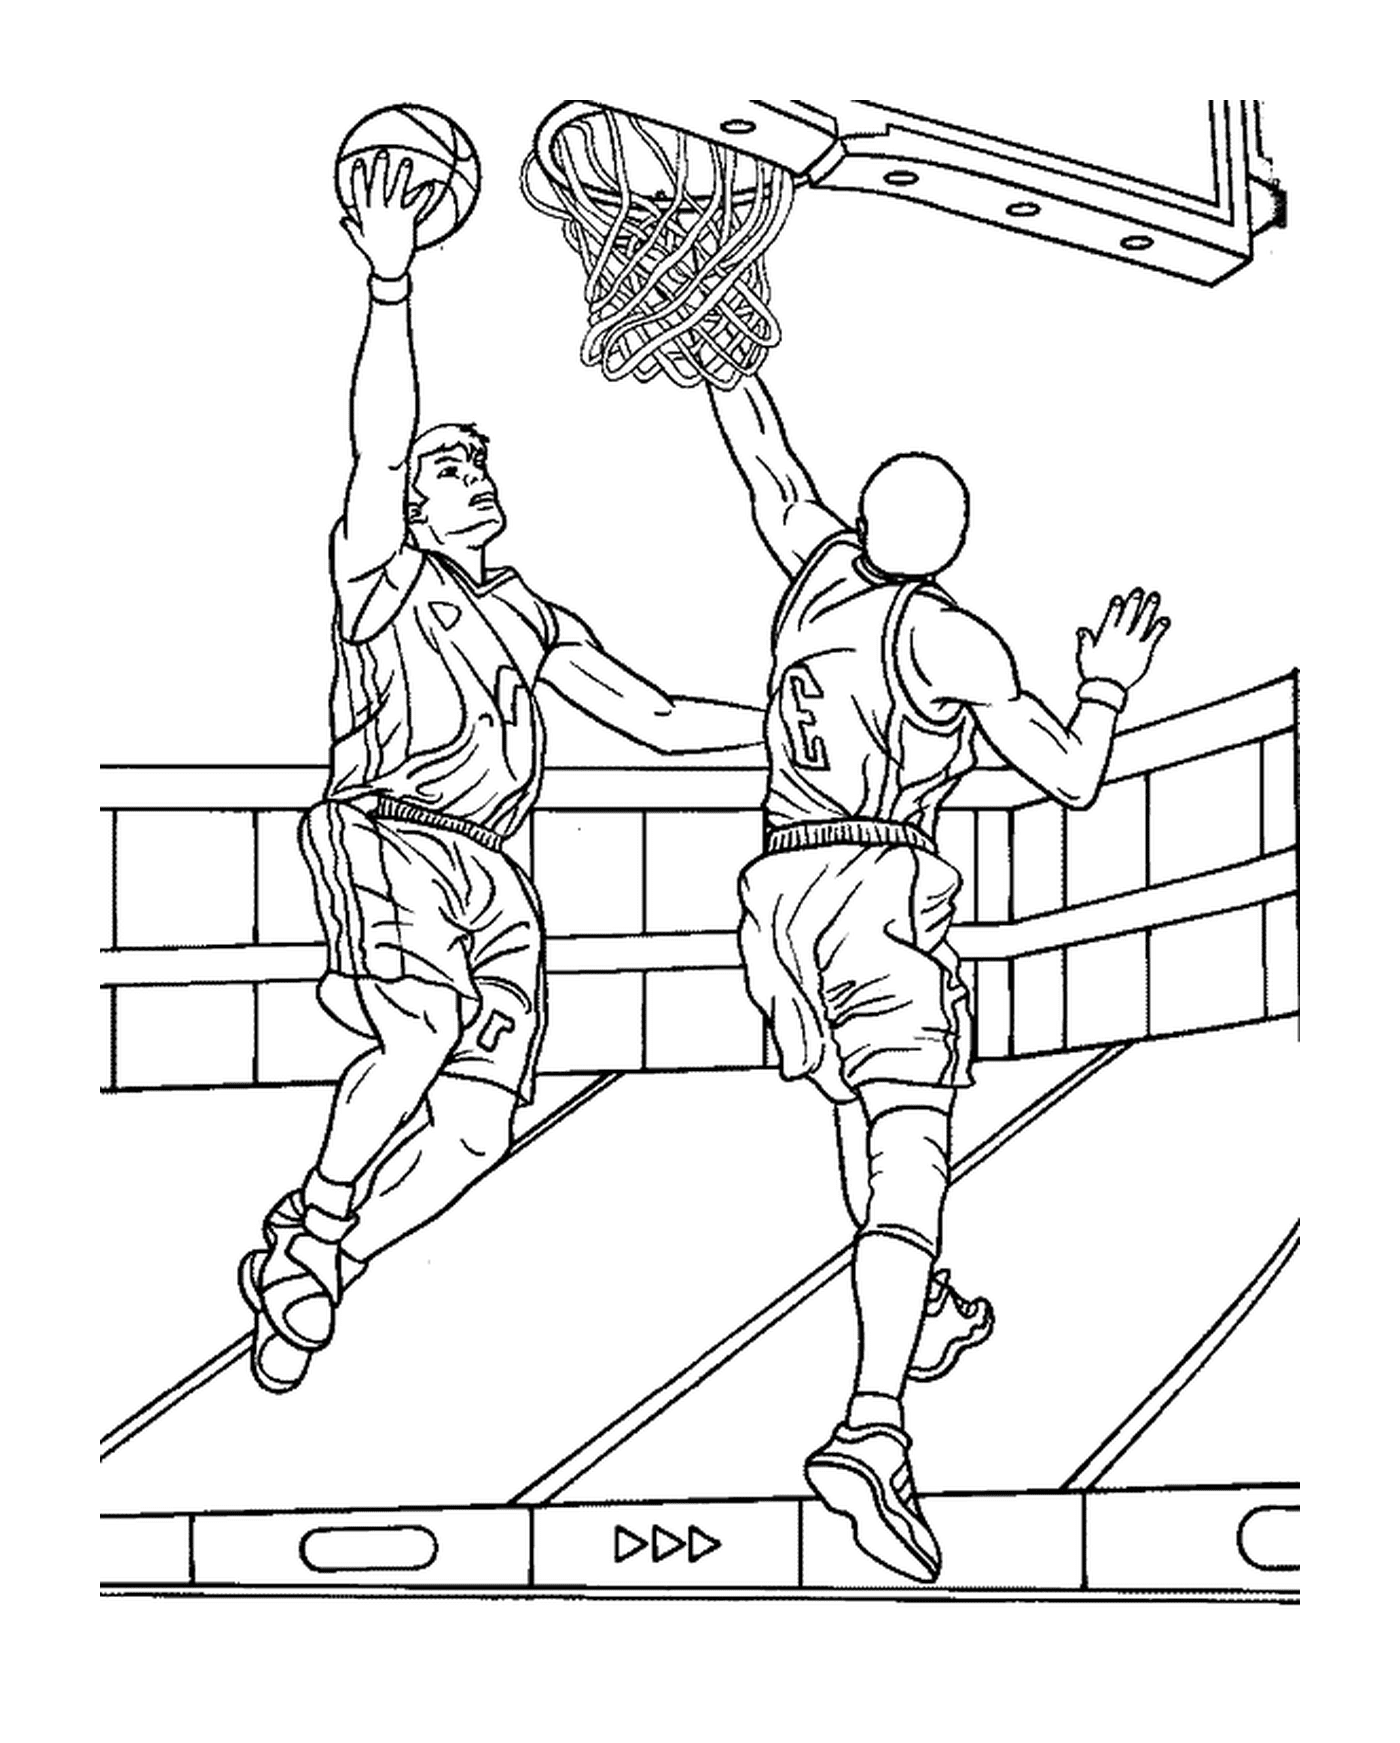  El jugador de baloncesto anotará una canasta a pesar del defensor 